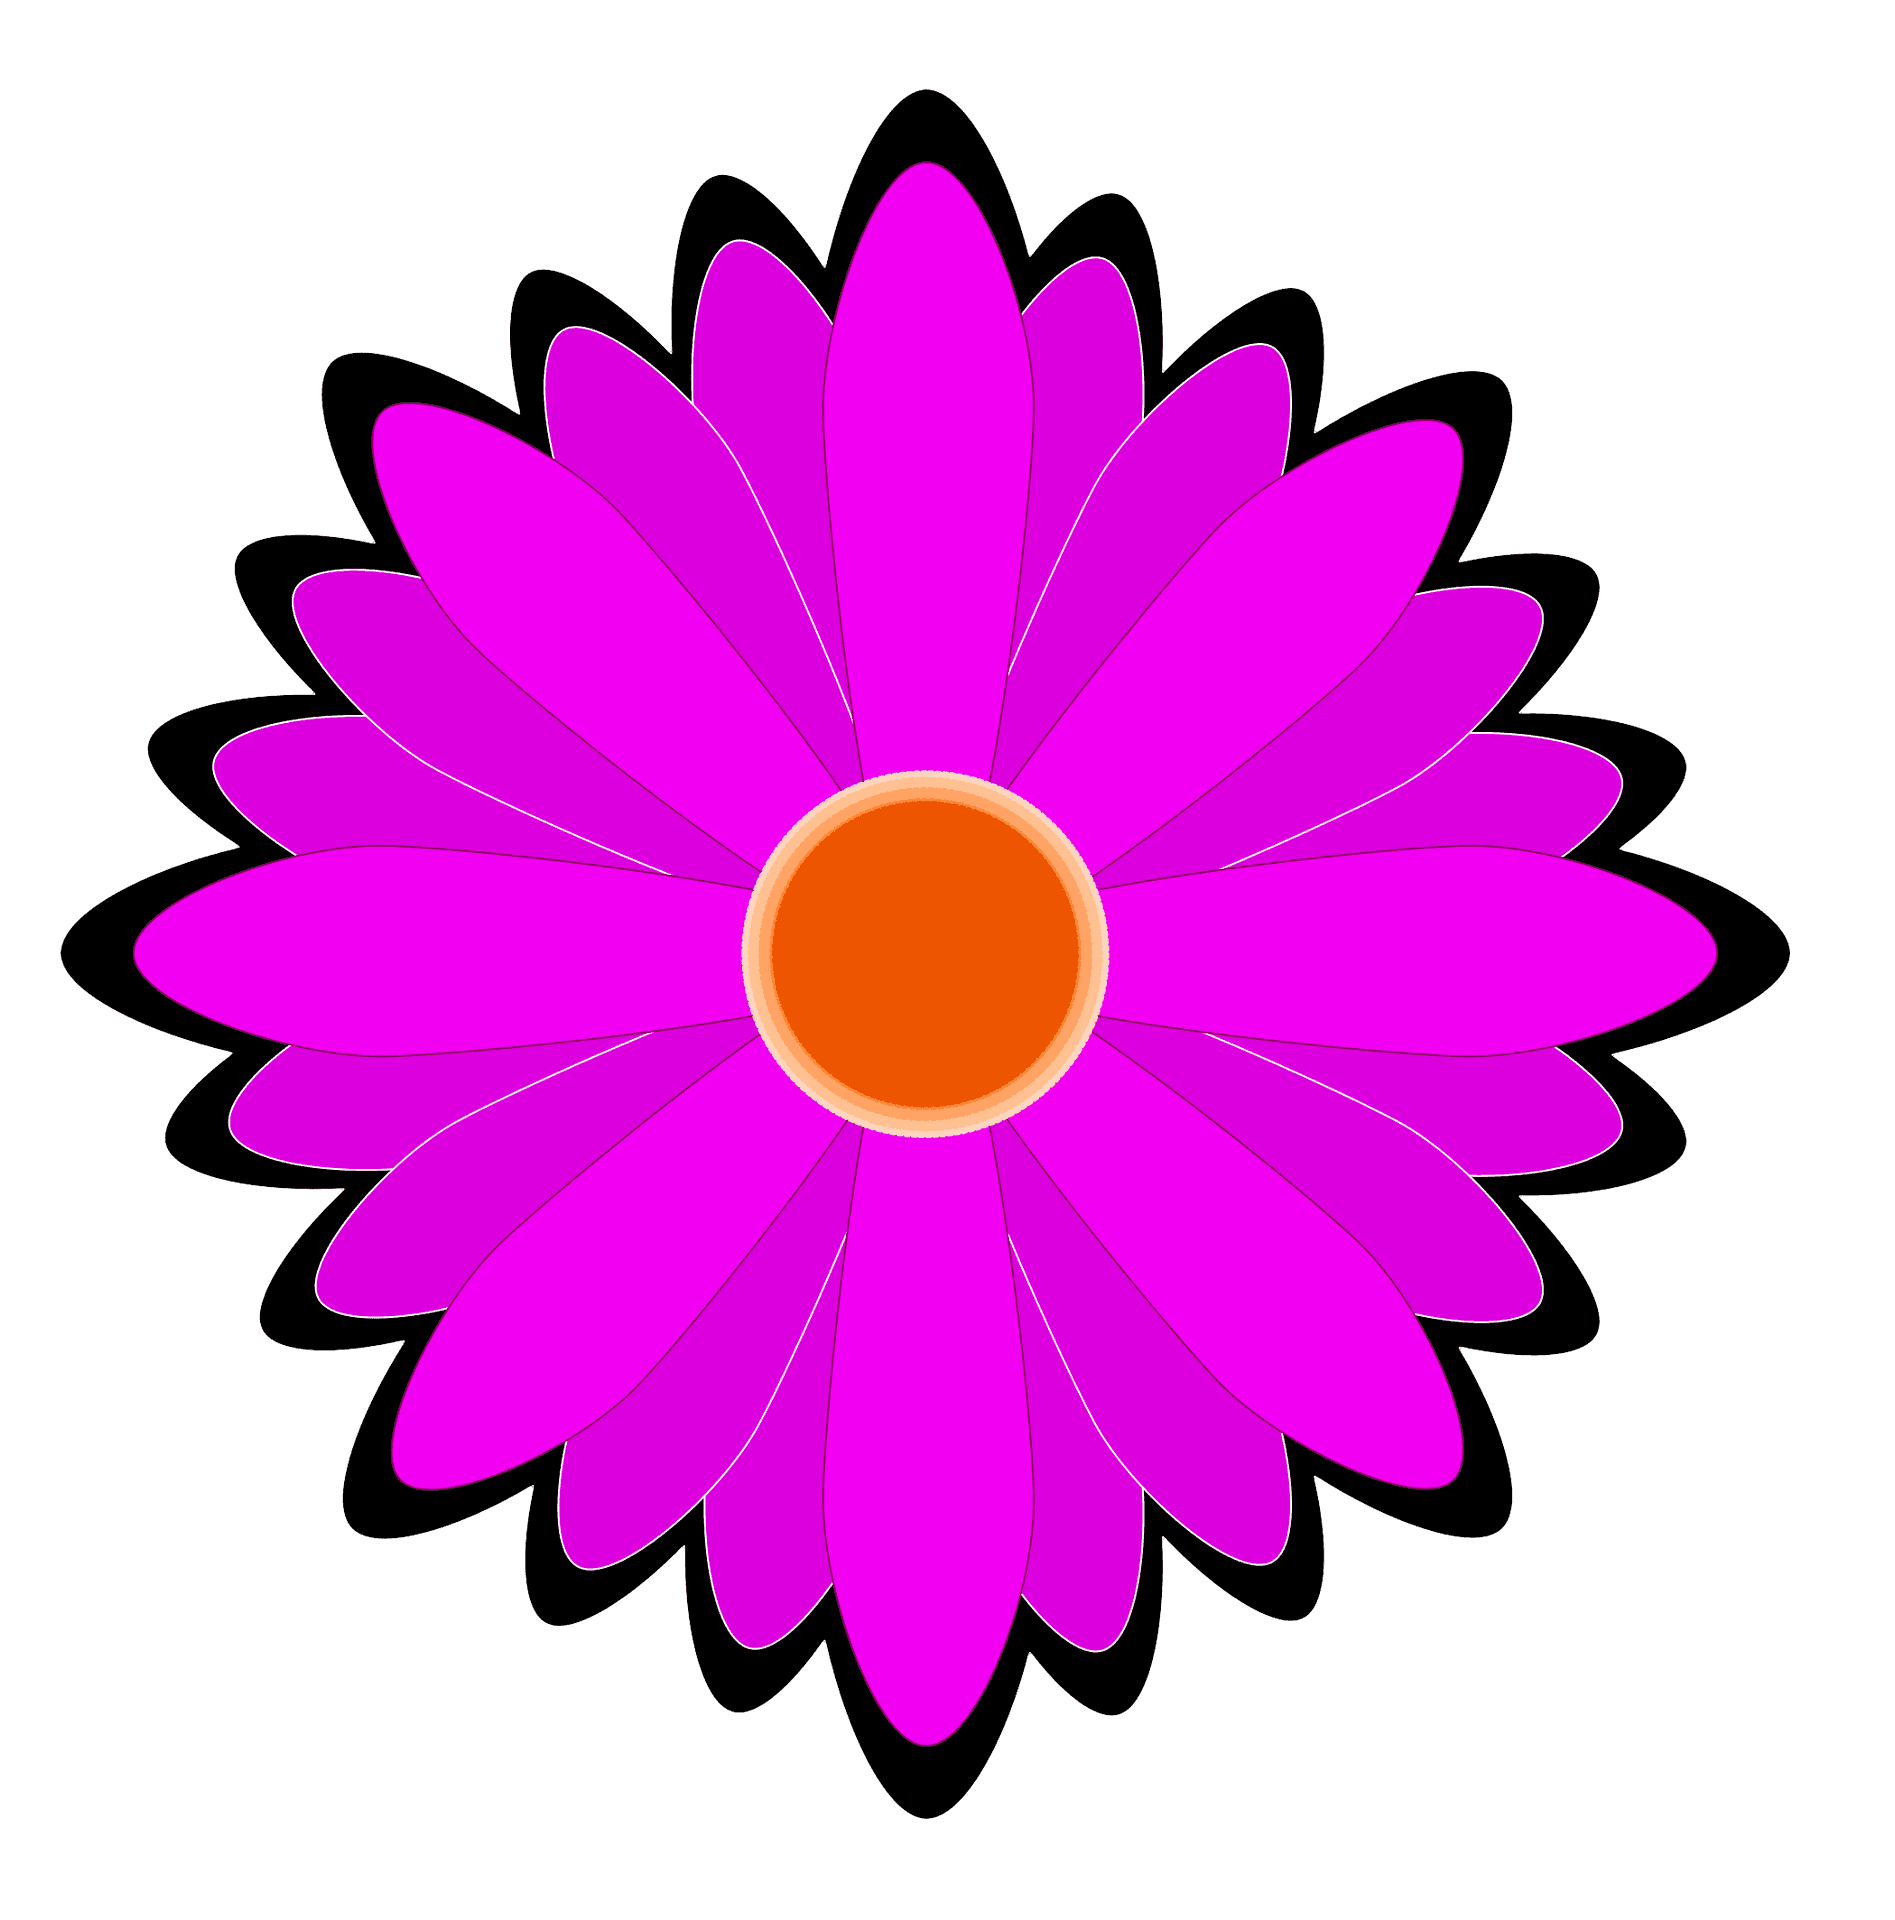 Vibrant Pink Flower Illustration PNG image